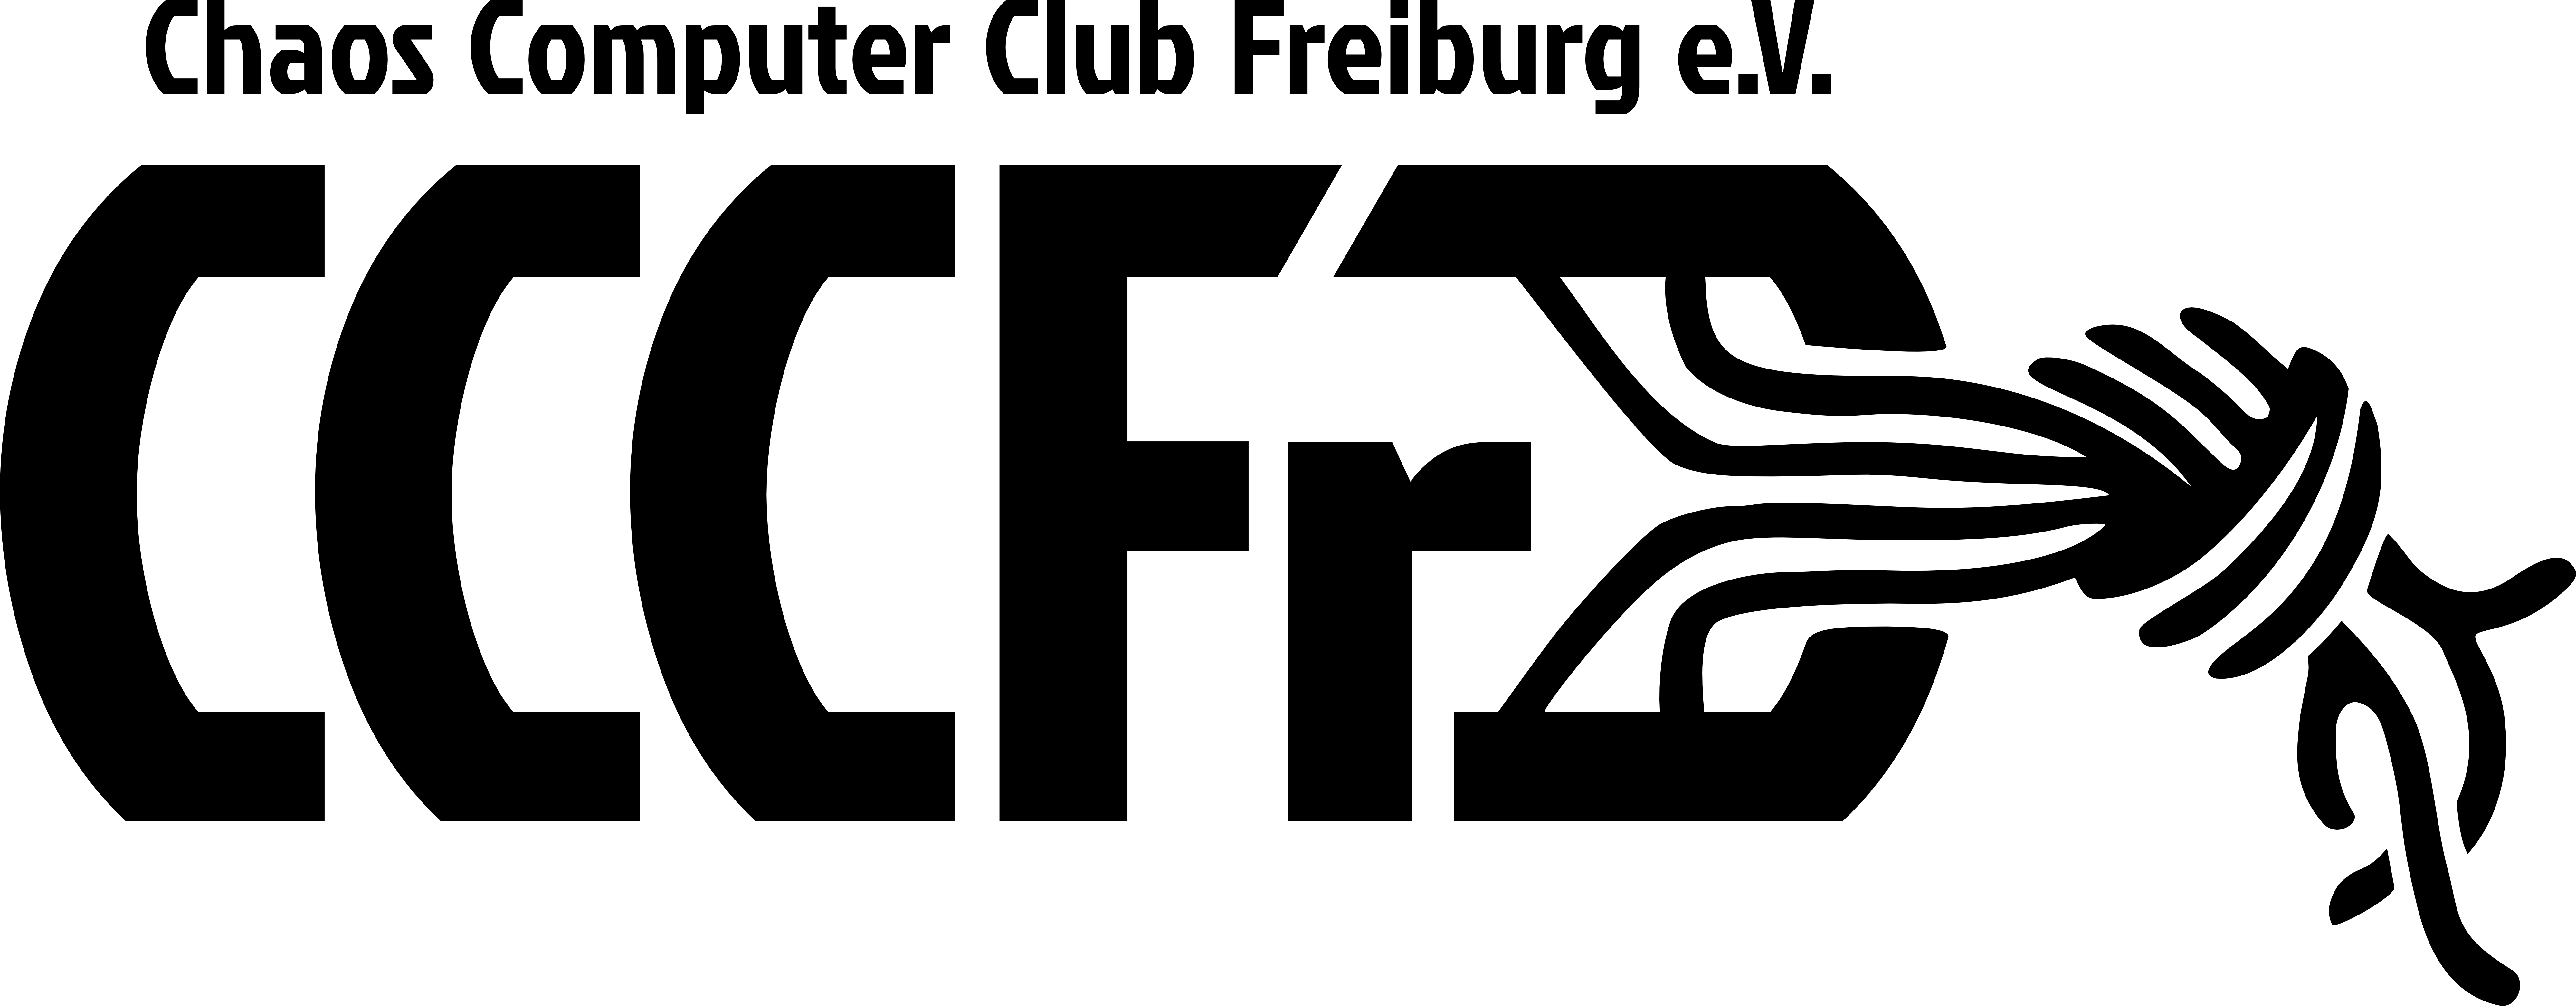 cccfr-logo2.png